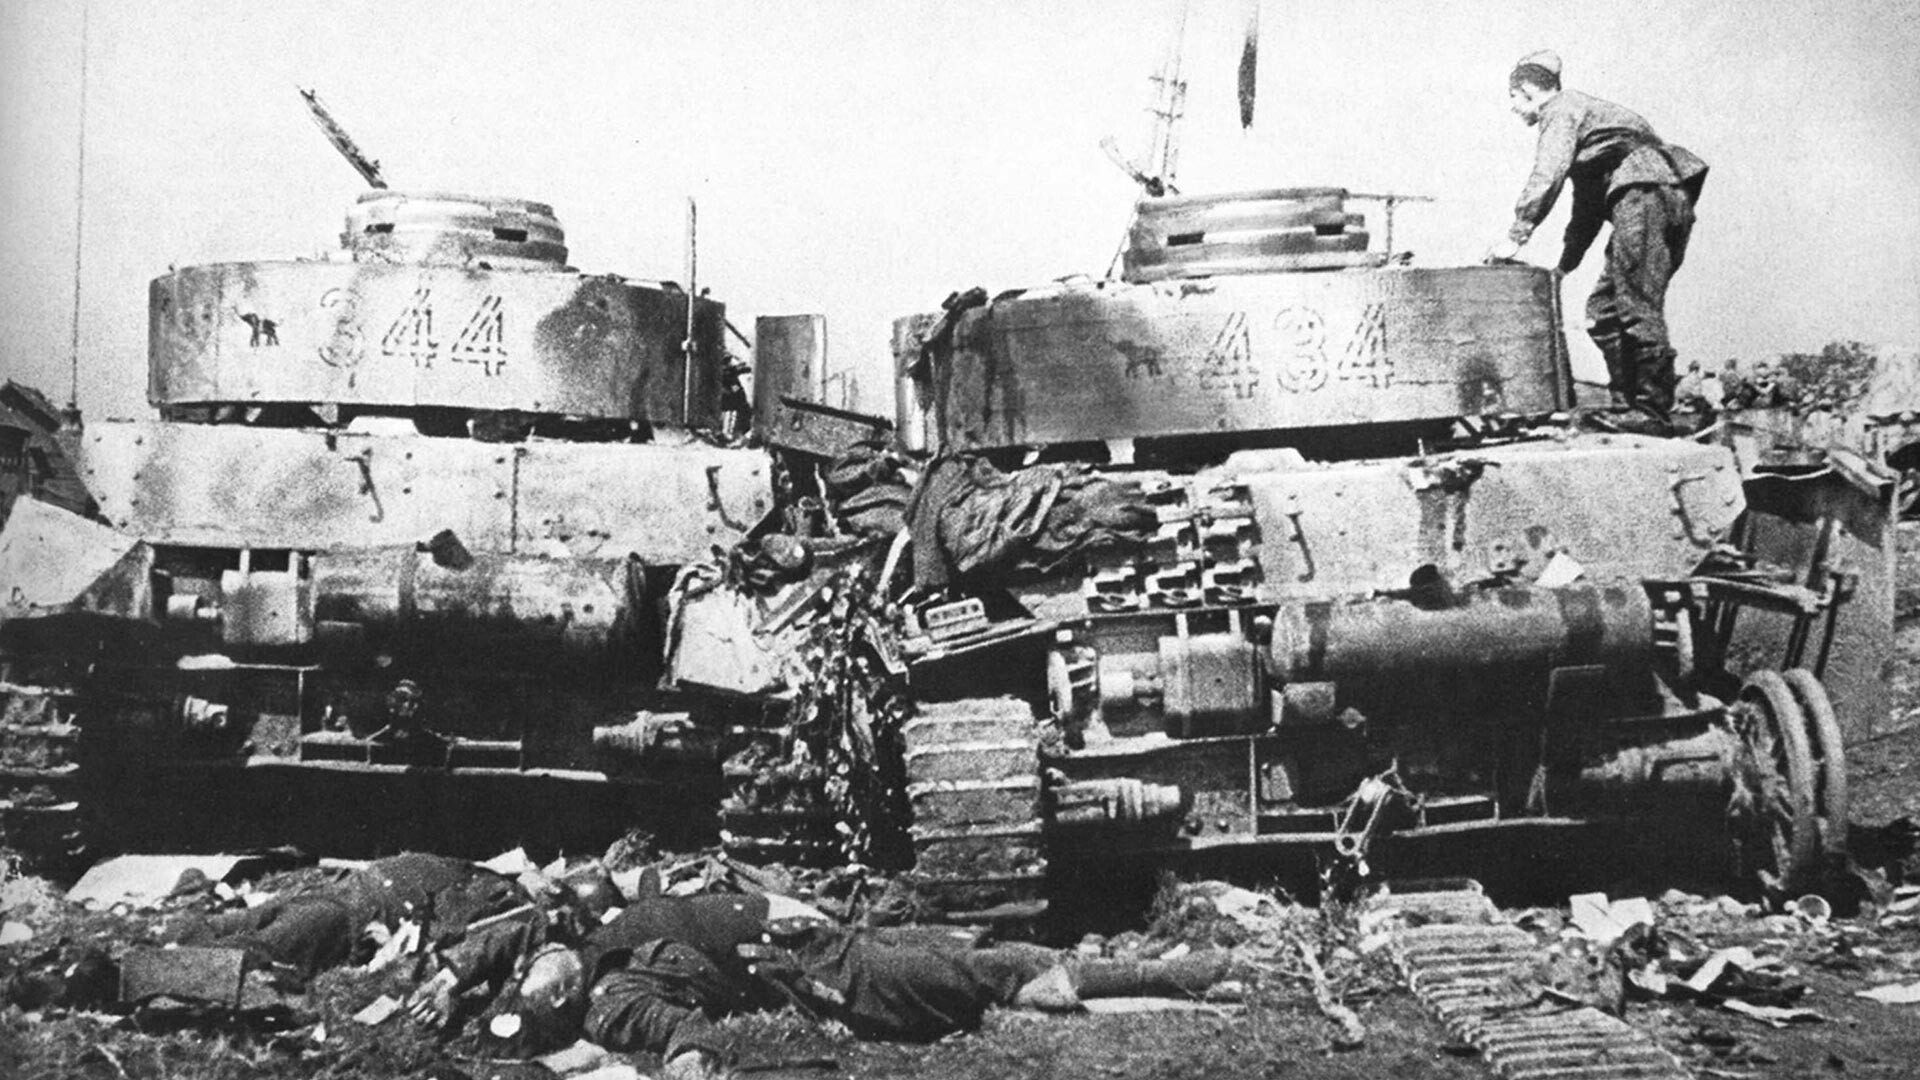 Dva uništena neprijateljska tenka Panzer IV 20. Pancer divizije i mrtvi članovi posade. Sovjetski vojnici kod Bobrujska. 